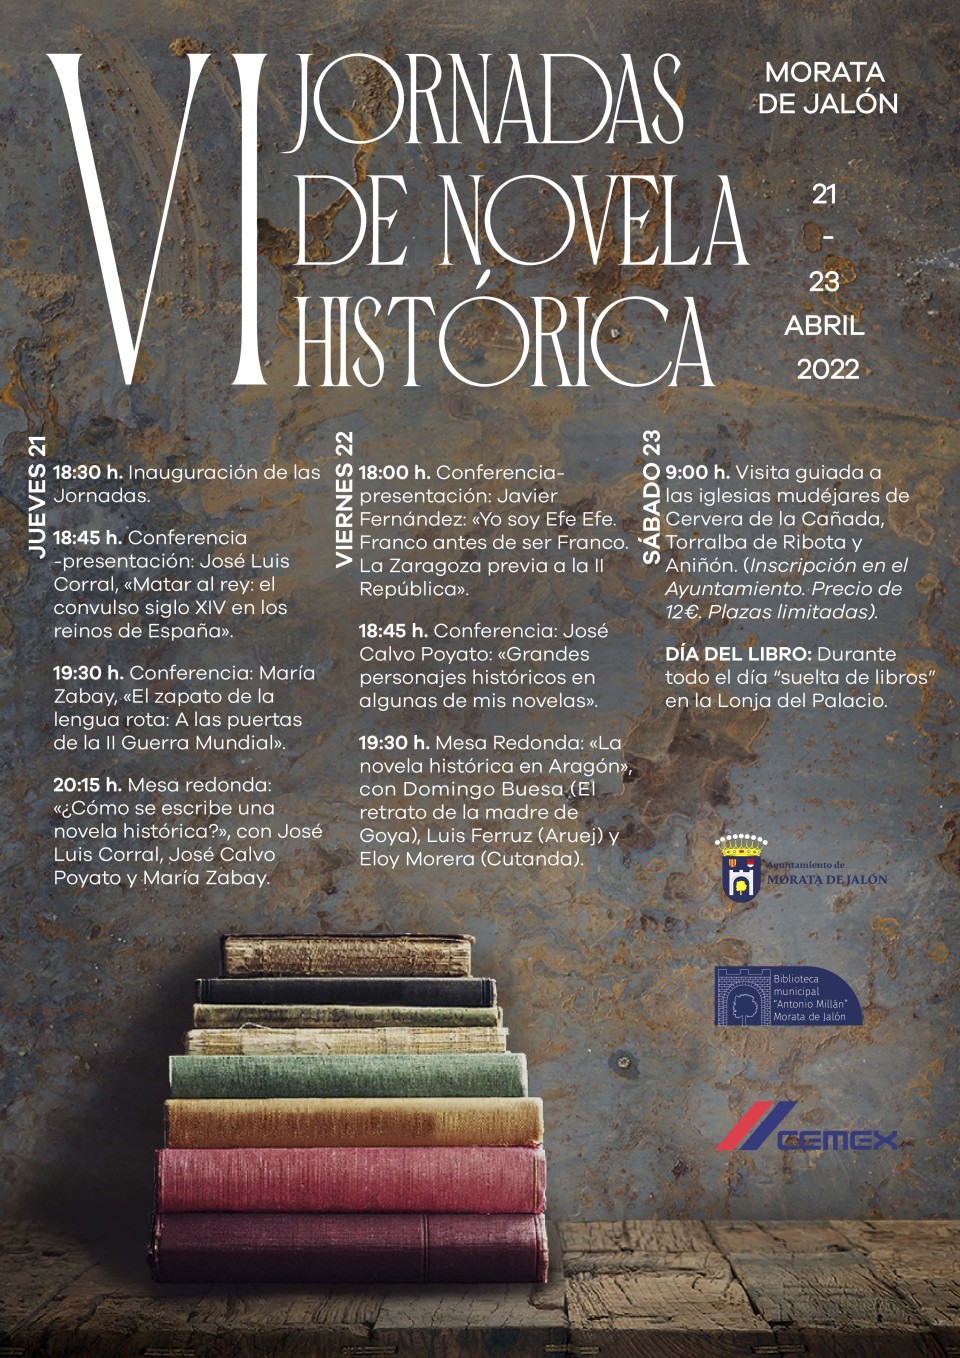 Imagen VI Jornadas de Novela Histórica en Morata de Jalón